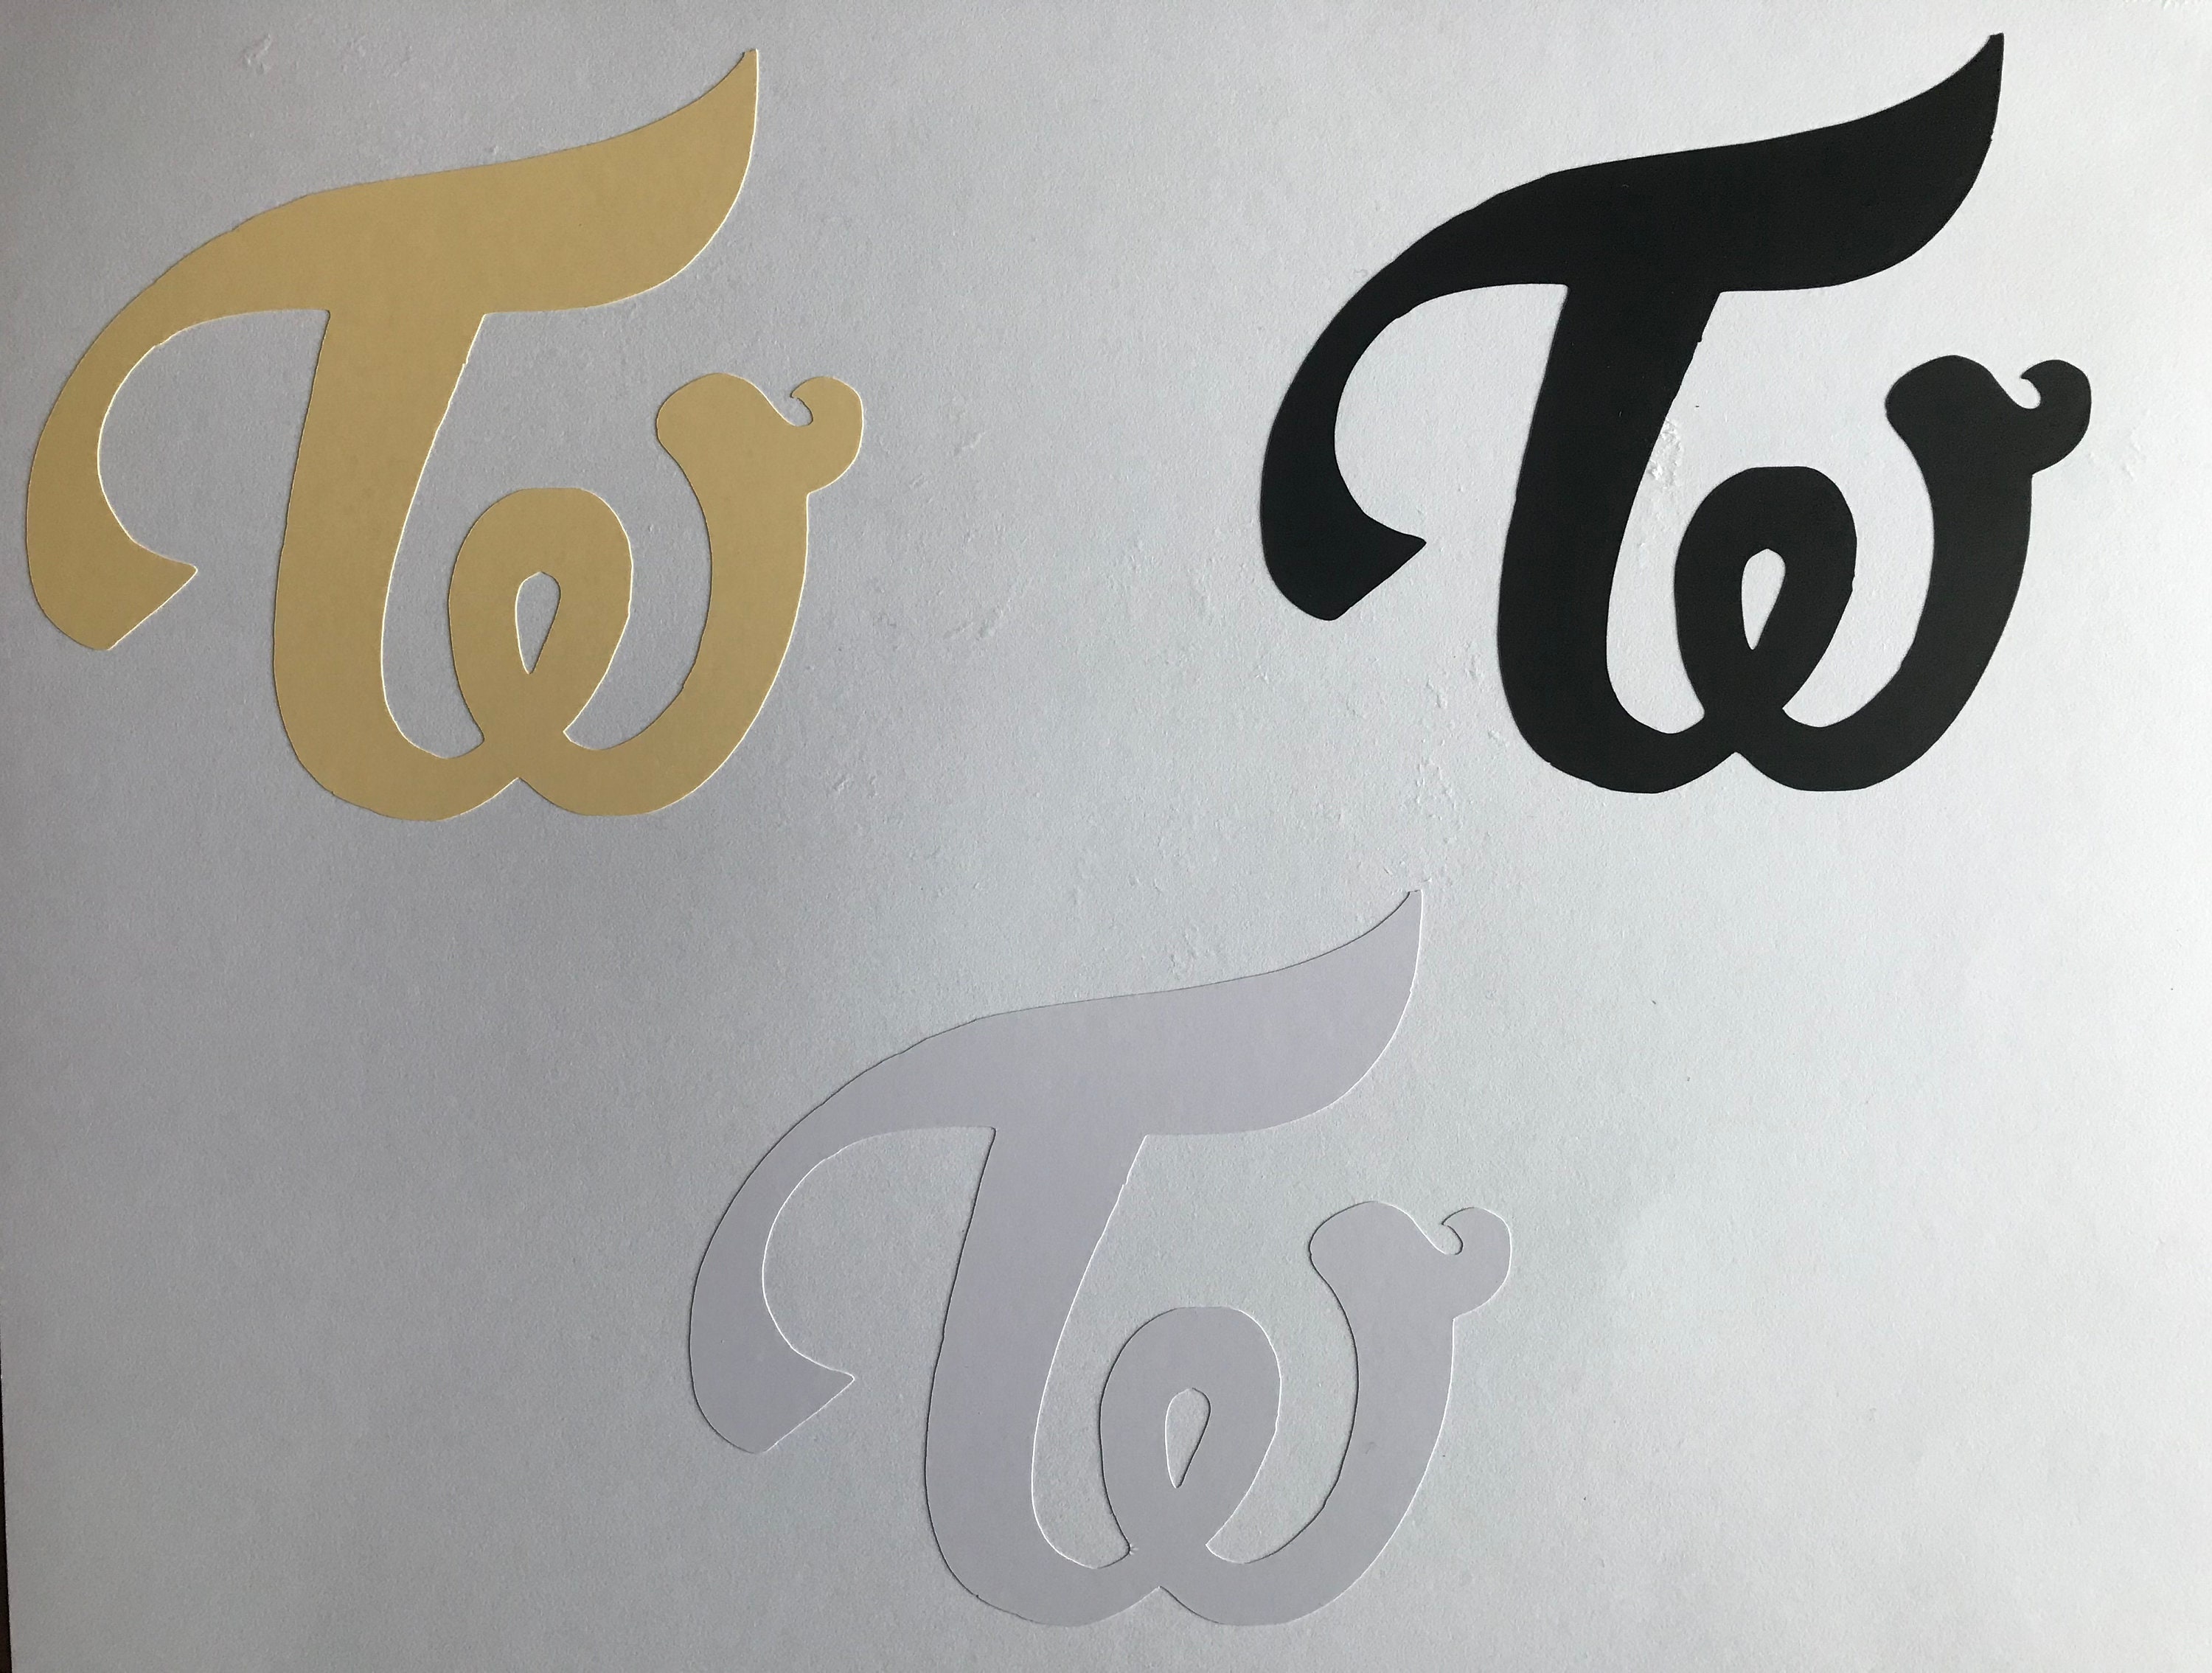 Twice Logo – Subtle-ish Shop